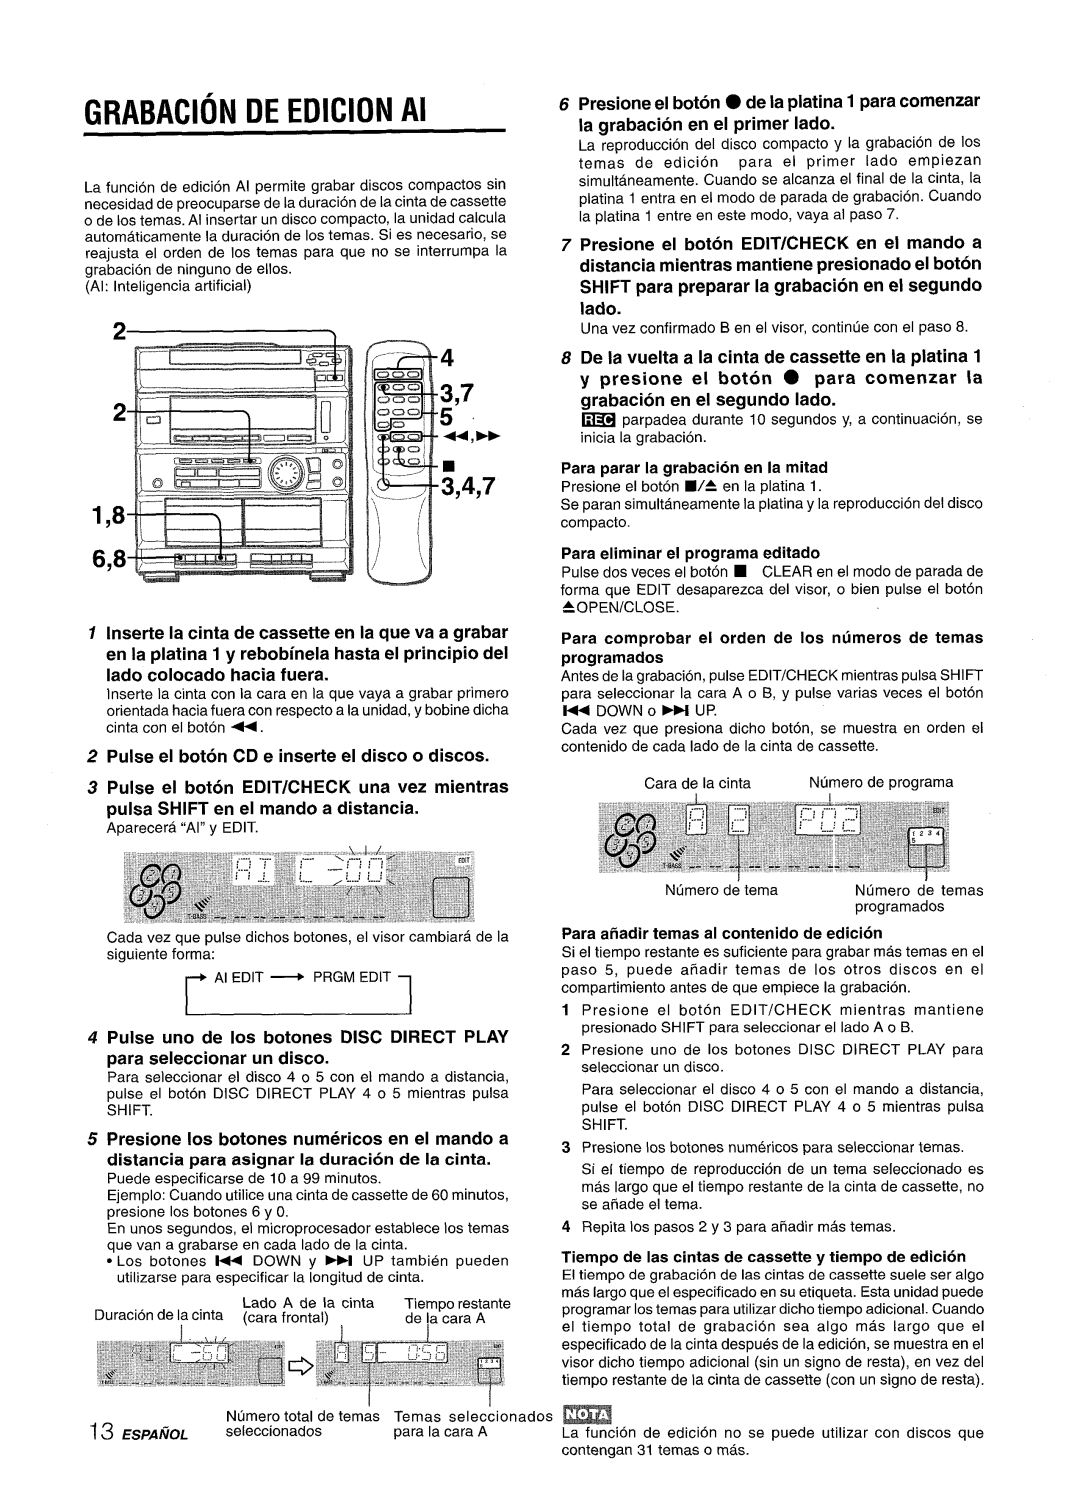 Sony CX-ZR525 manual GRABACION DE EDICION Al, Pulse uno de Ios botones DISC DIRECT PLAY, la grabacion en el primer Iado 